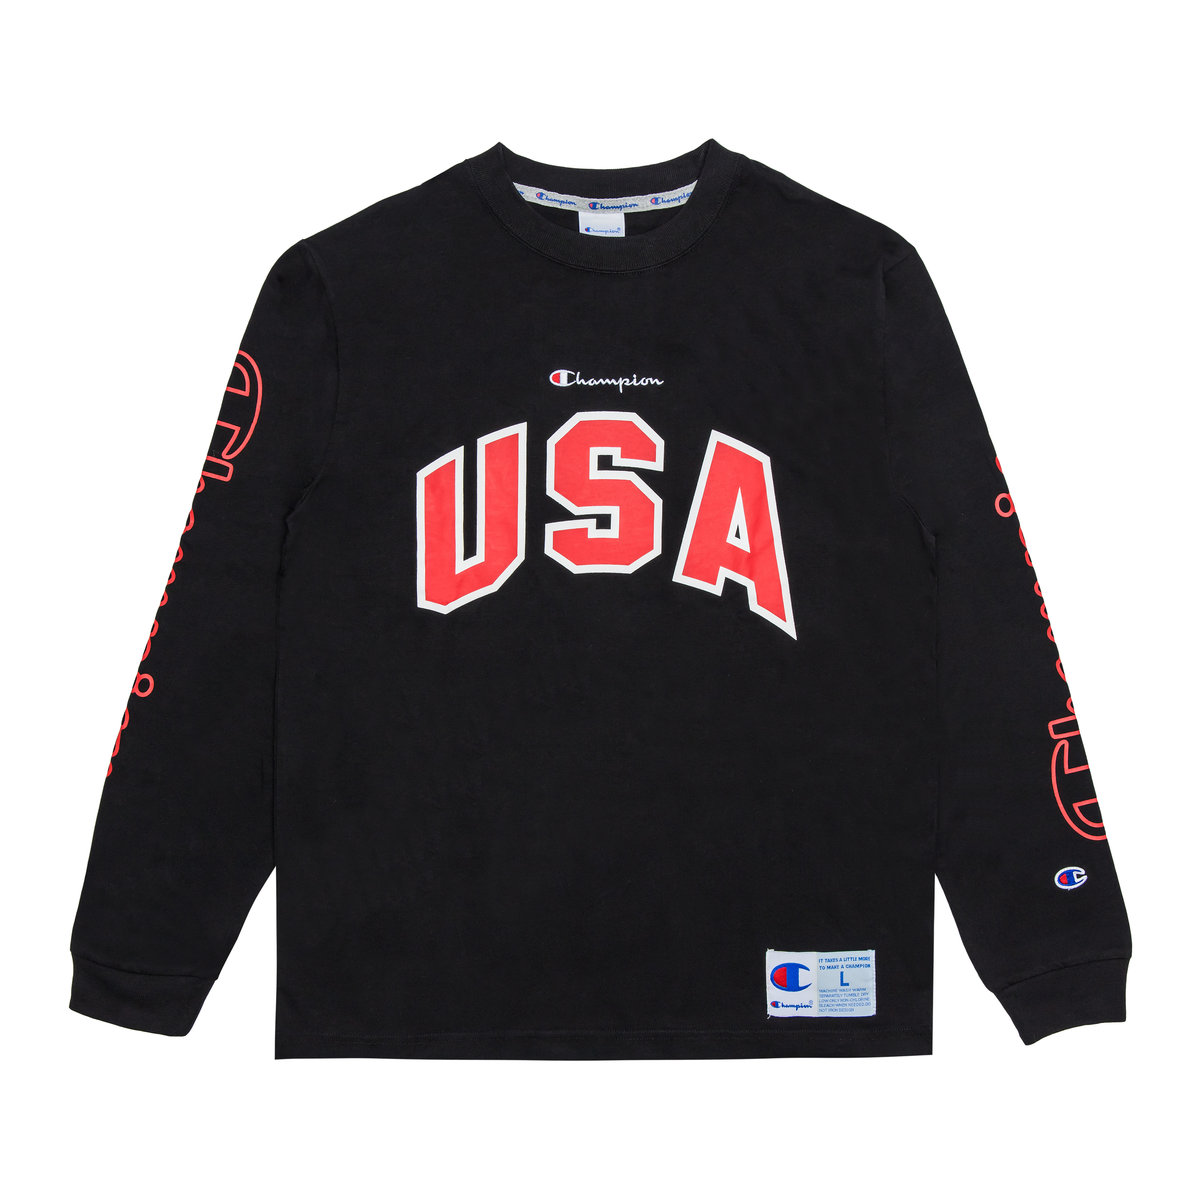 USA Long Sleeves T-shirt 